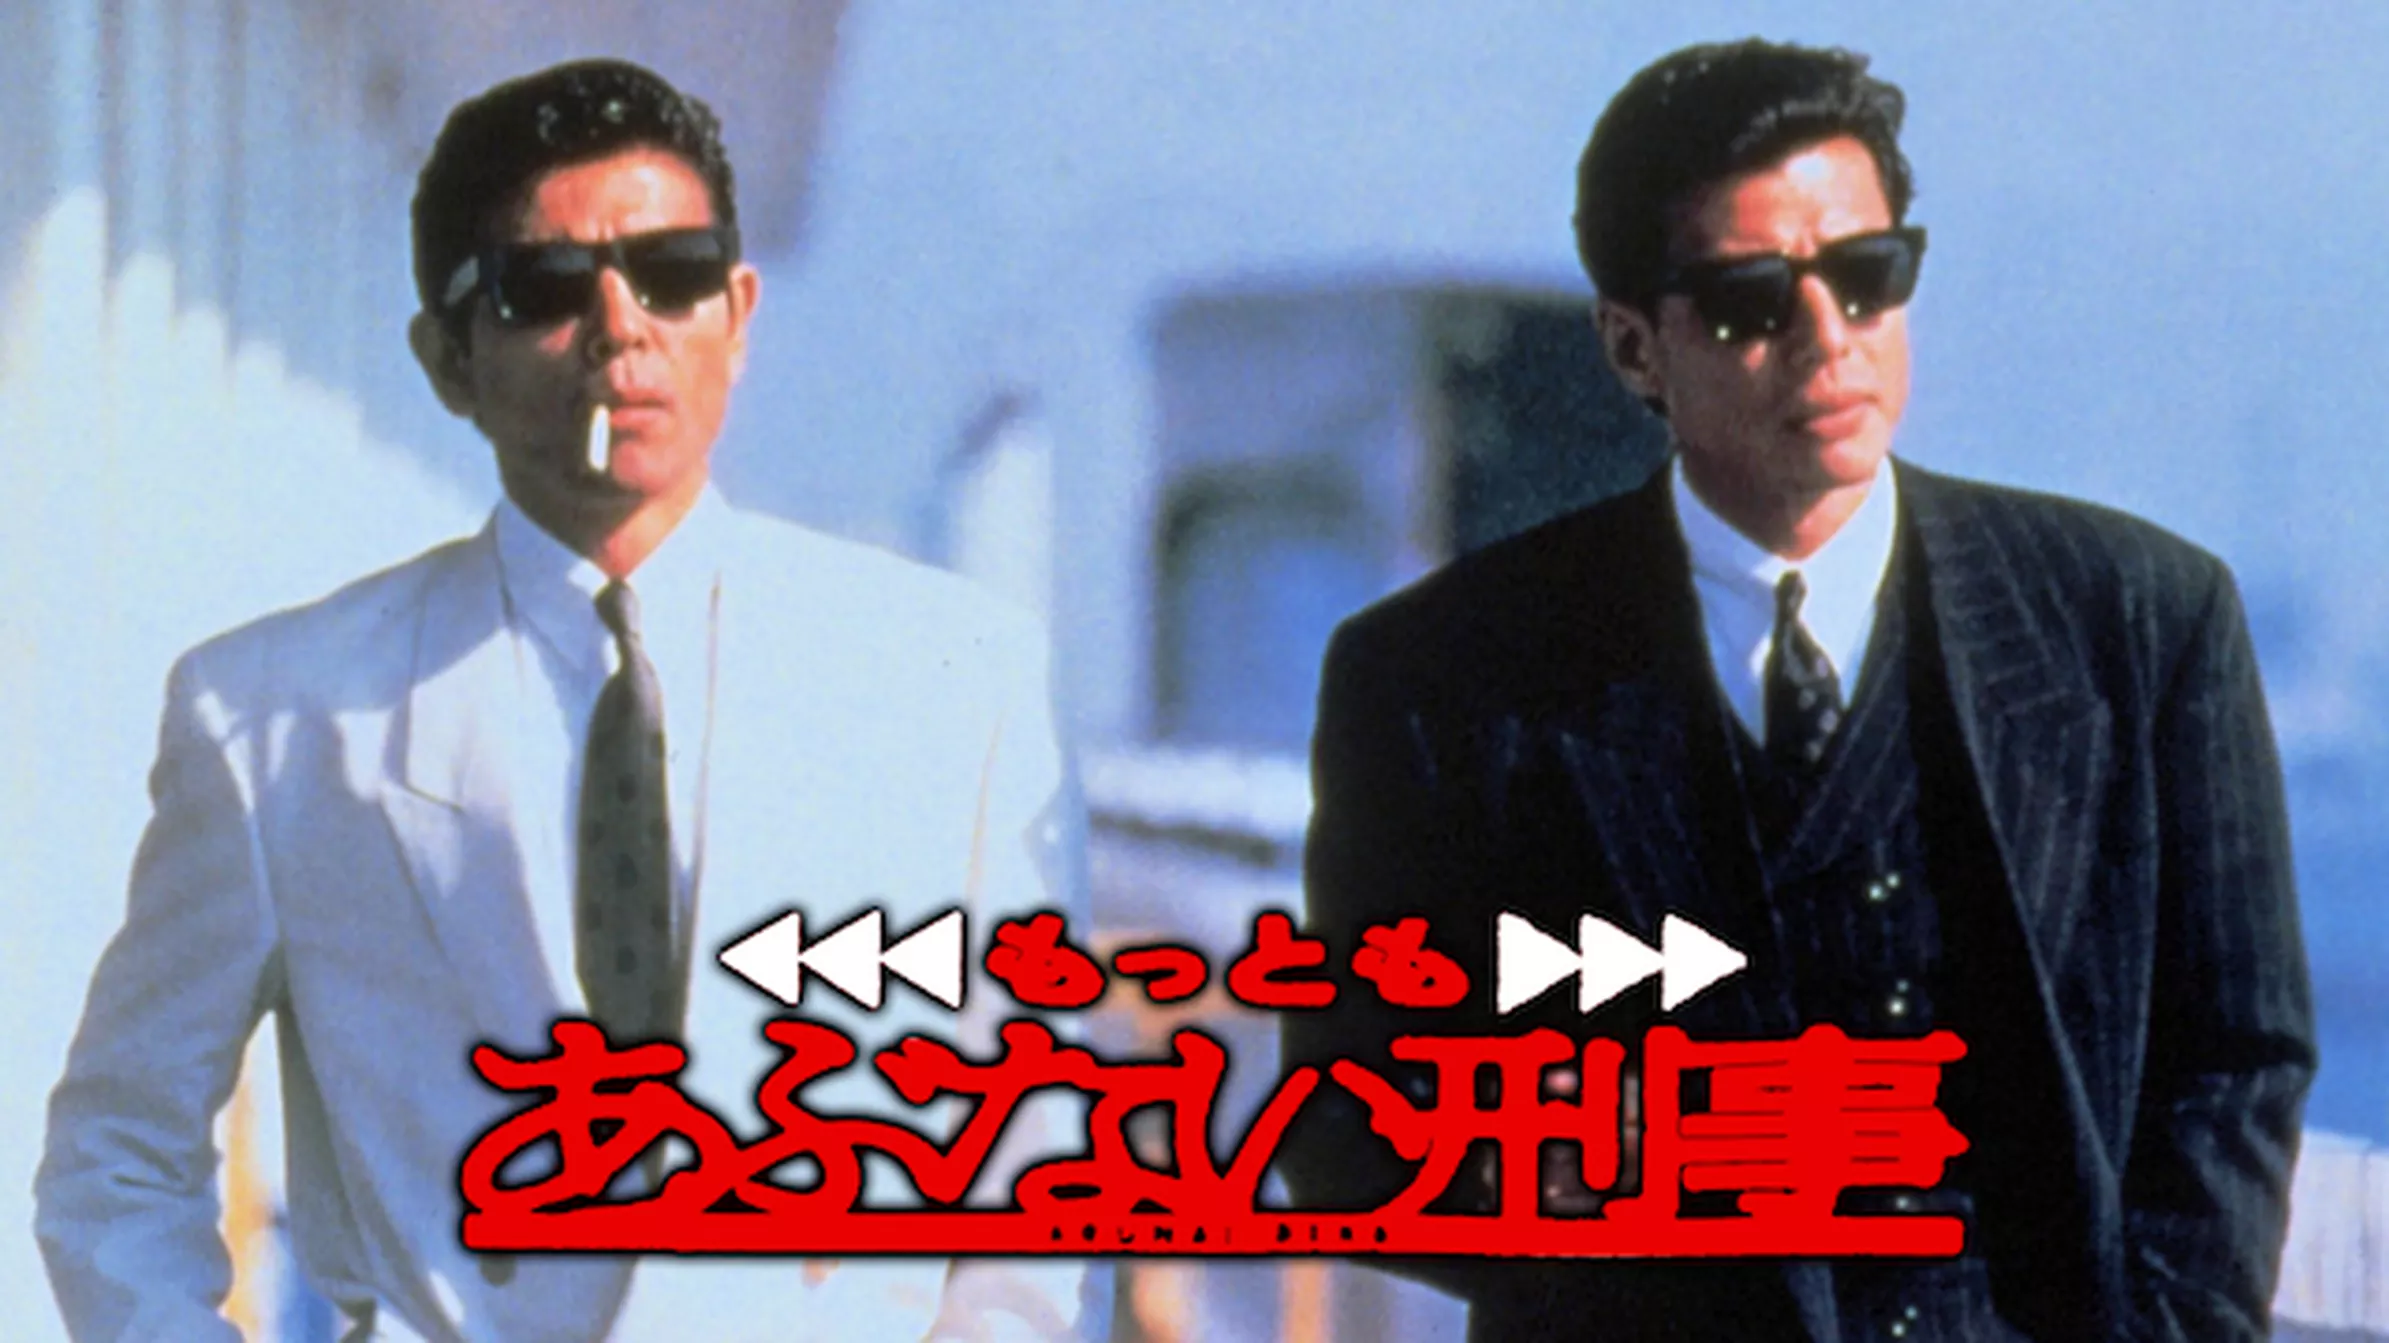 またまたあぶない刑事(1988)(邦画 / 1988) - 動画配信 | U-NEXT 31日間 